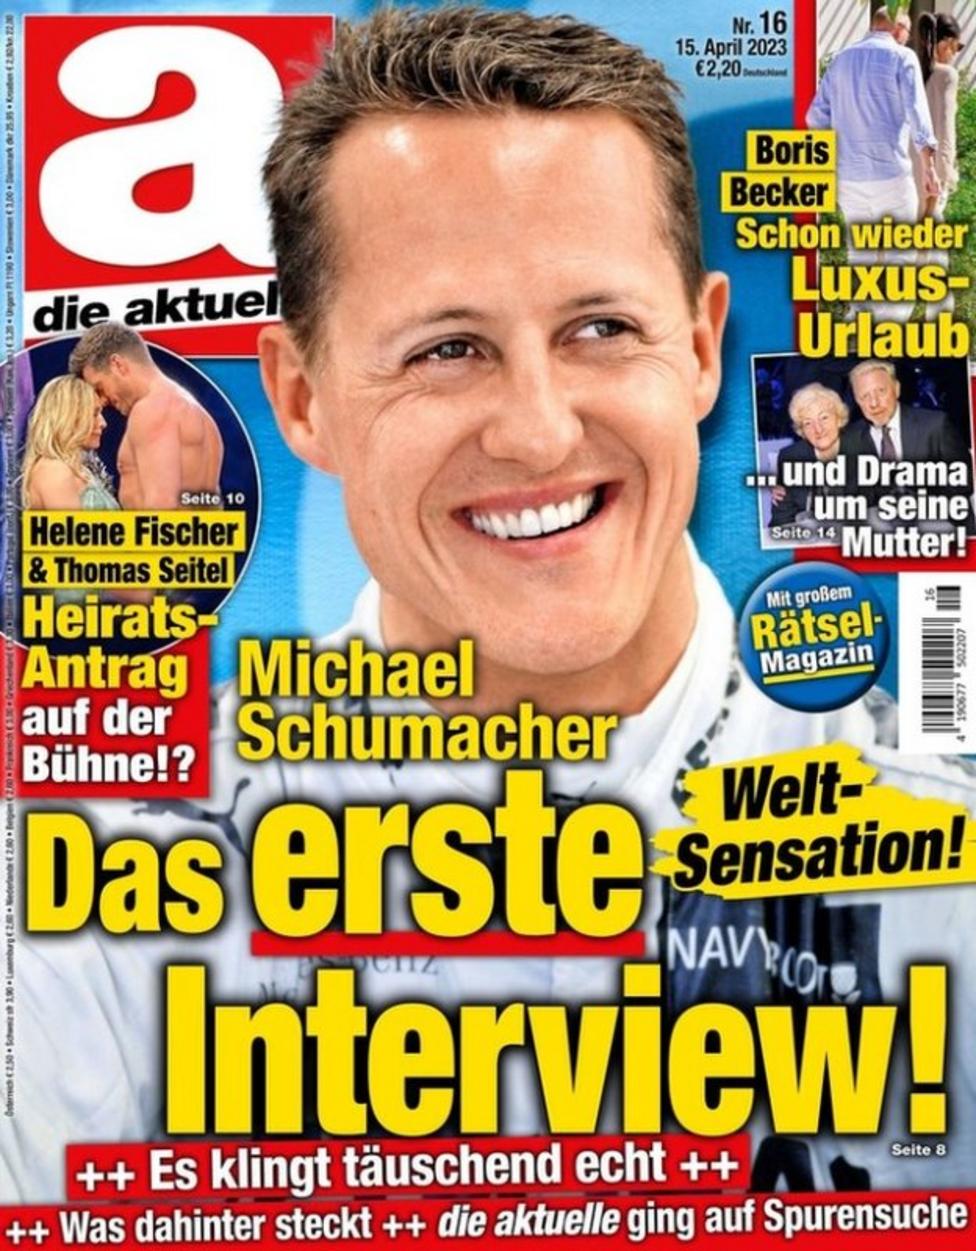 Schumacher false article _129419674_die_aktuel